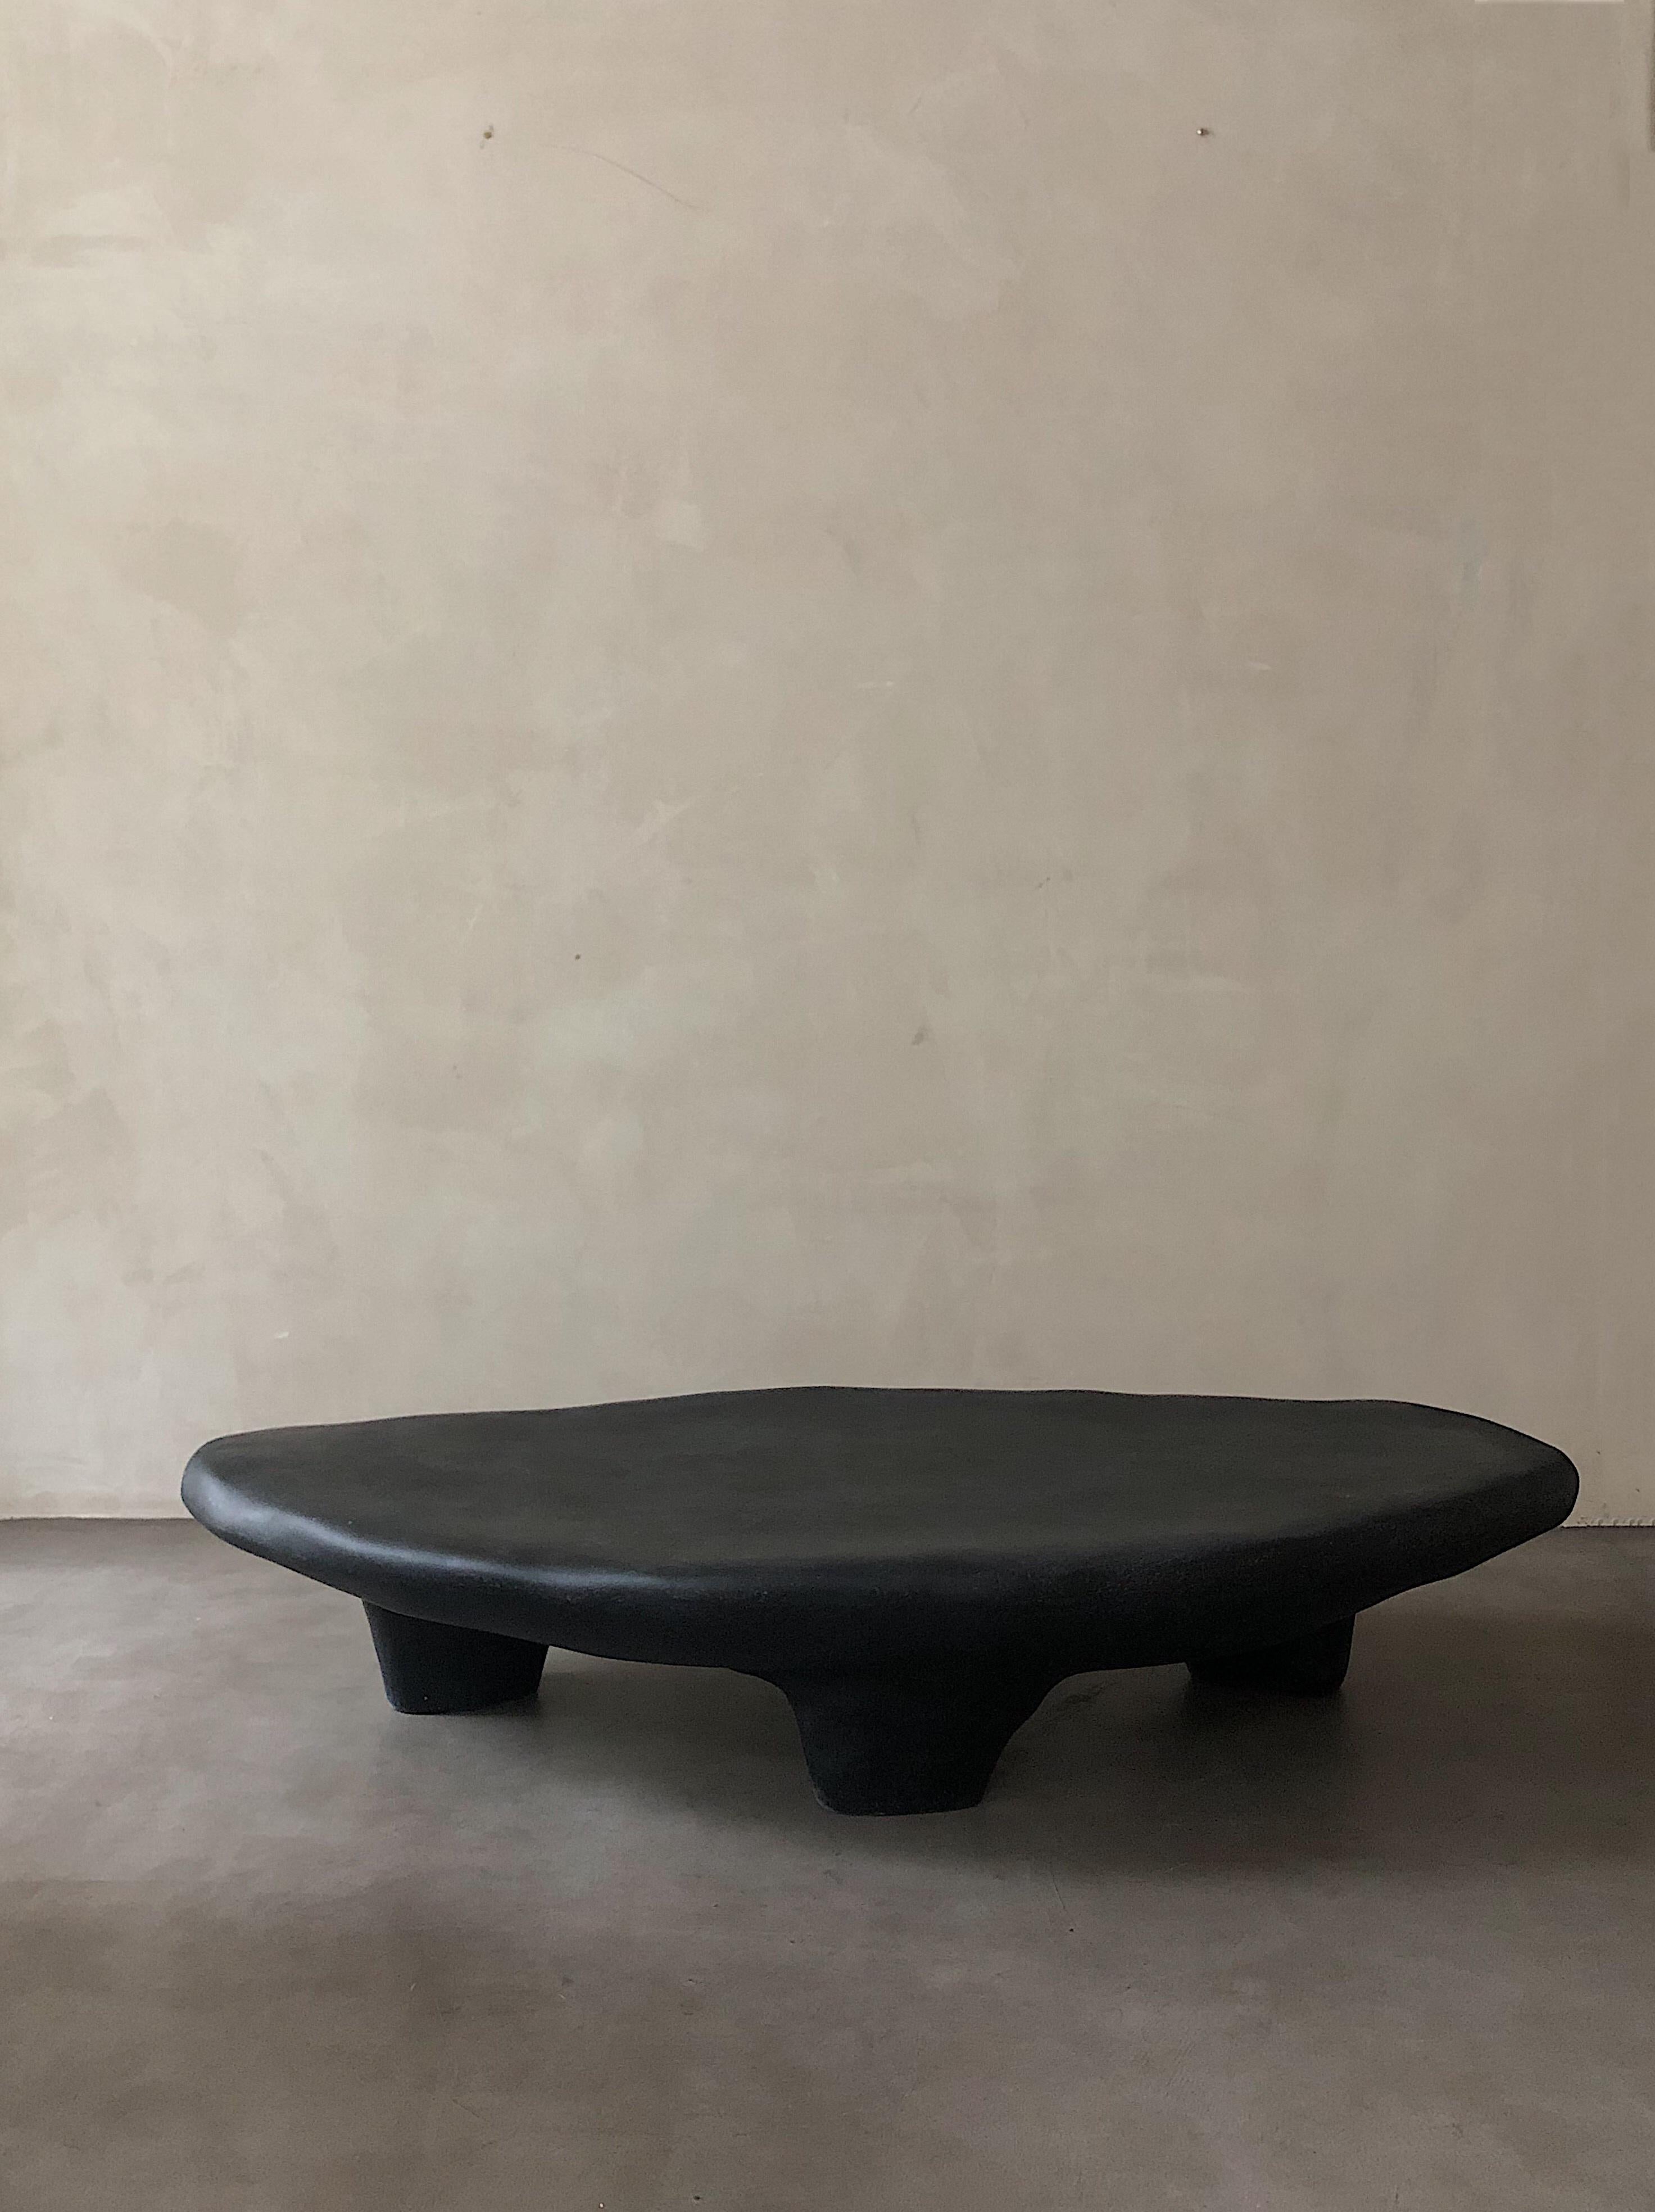 Table basse tripode noire par kar
Matériaux : PRF.
Dimensions : 150 x 85 x 30 cm.
*Cette pièce peut être utilisée à l'extérieur.

Inspiré des ustensiles à trois pieds, qui furent la première création de l'homme dans l'Antiquité. La structure en